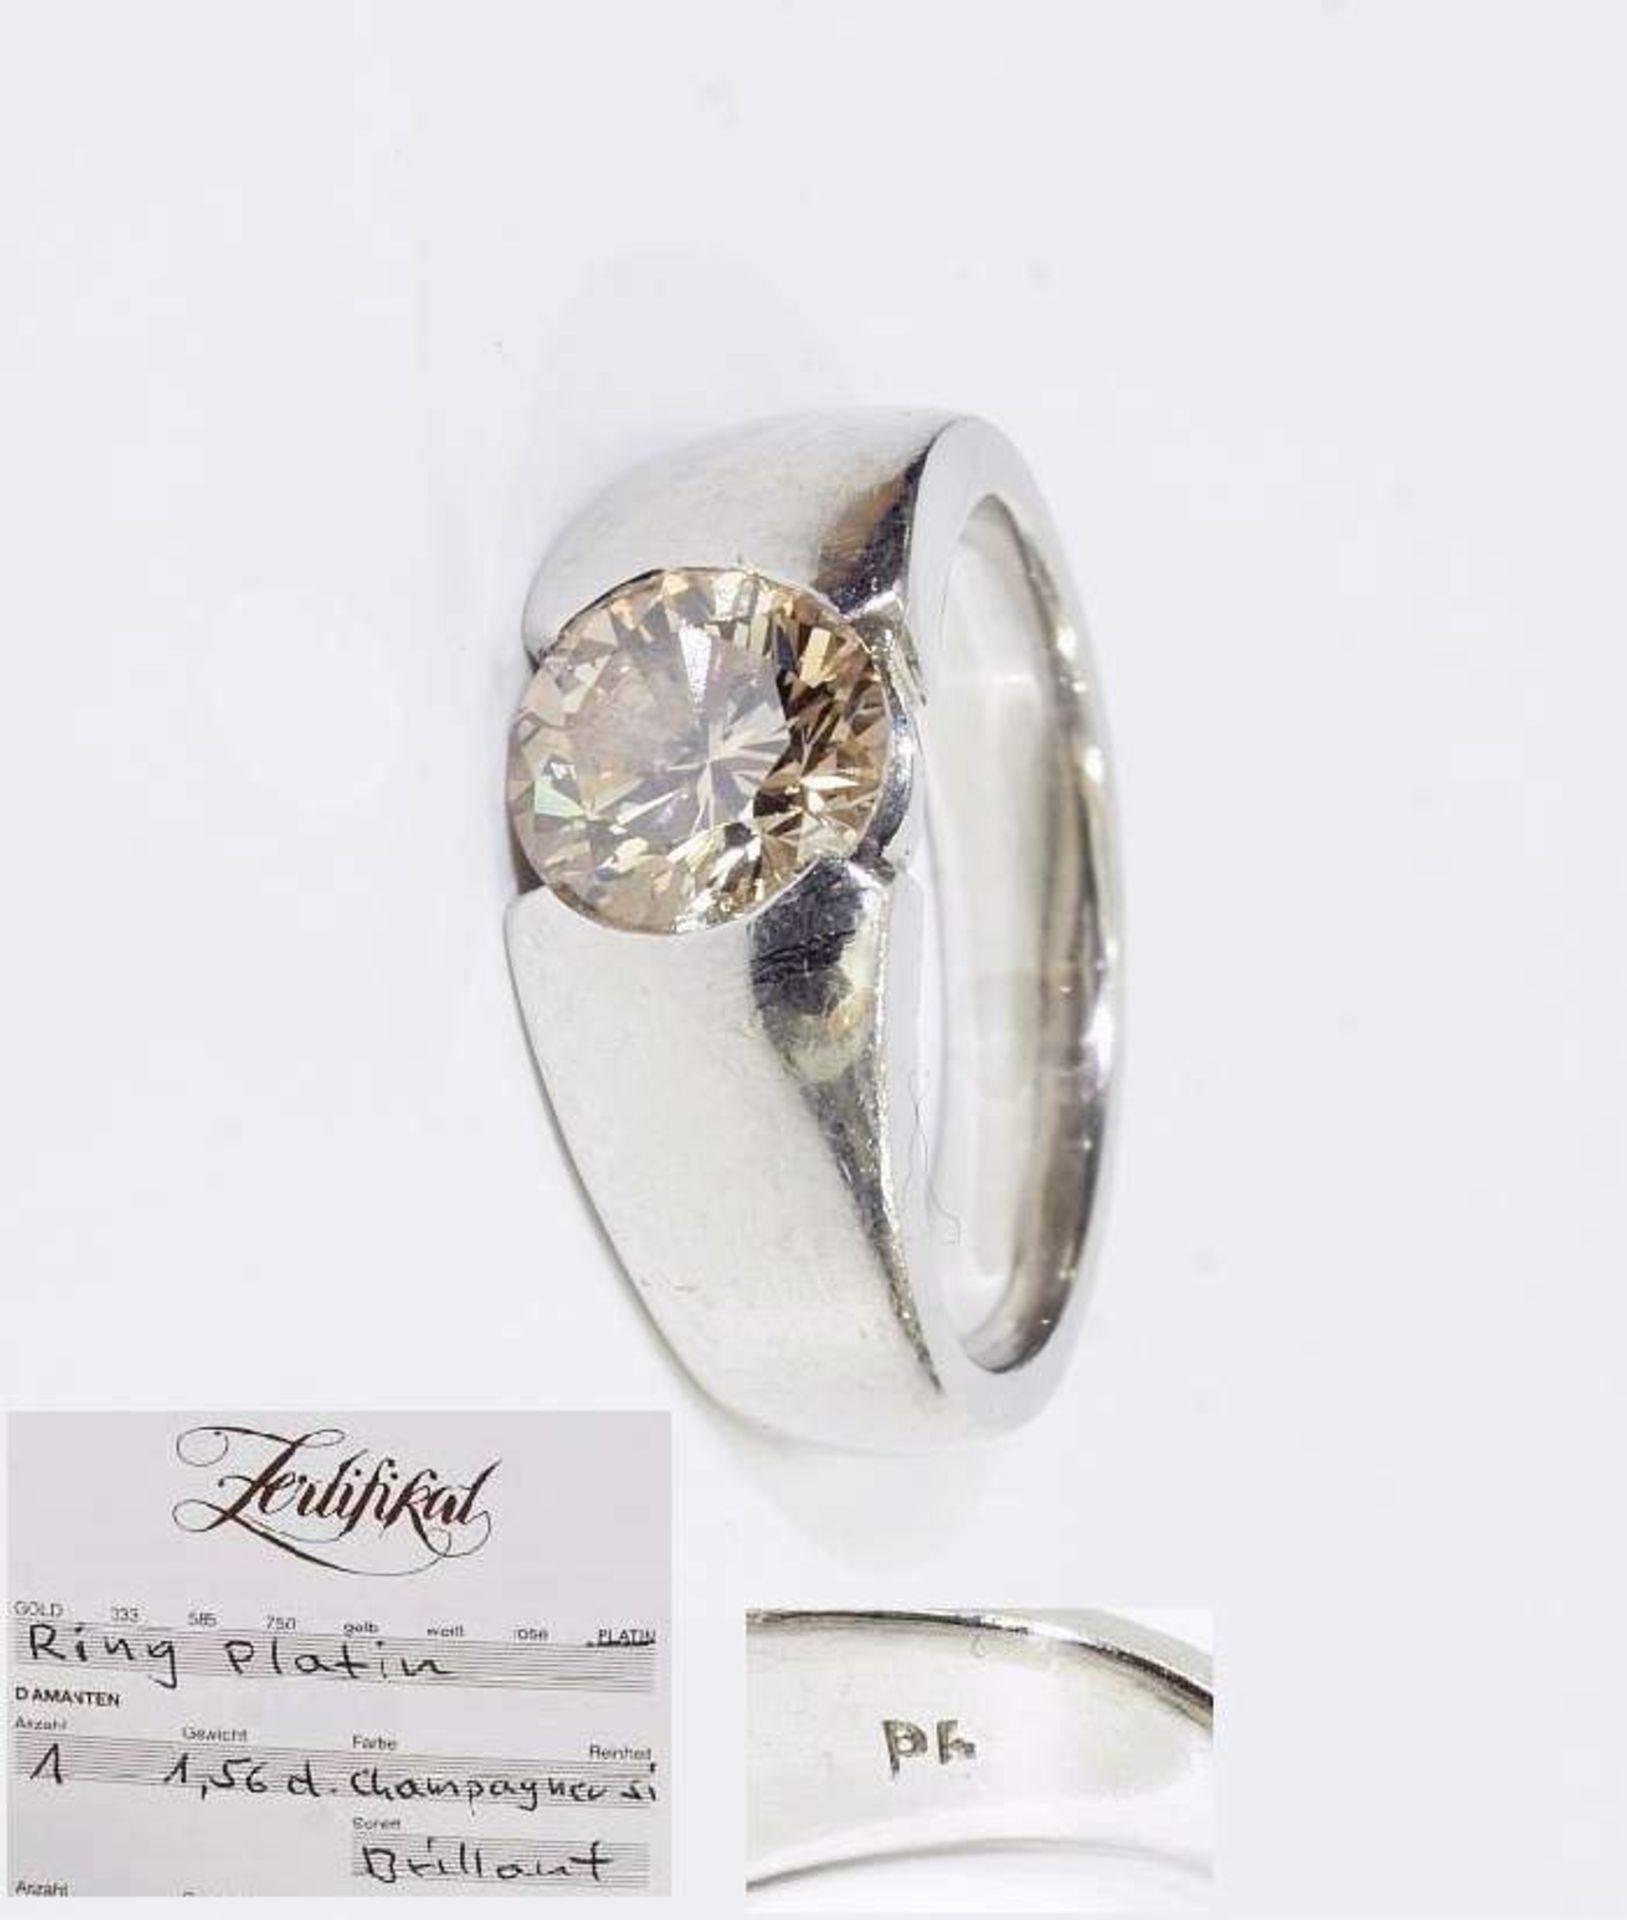 Platin-Brillant-Ring. Platin-Brillant-Ring, Mittig Brillant 1,56 ct/si, Farbe champagner. Kauf-